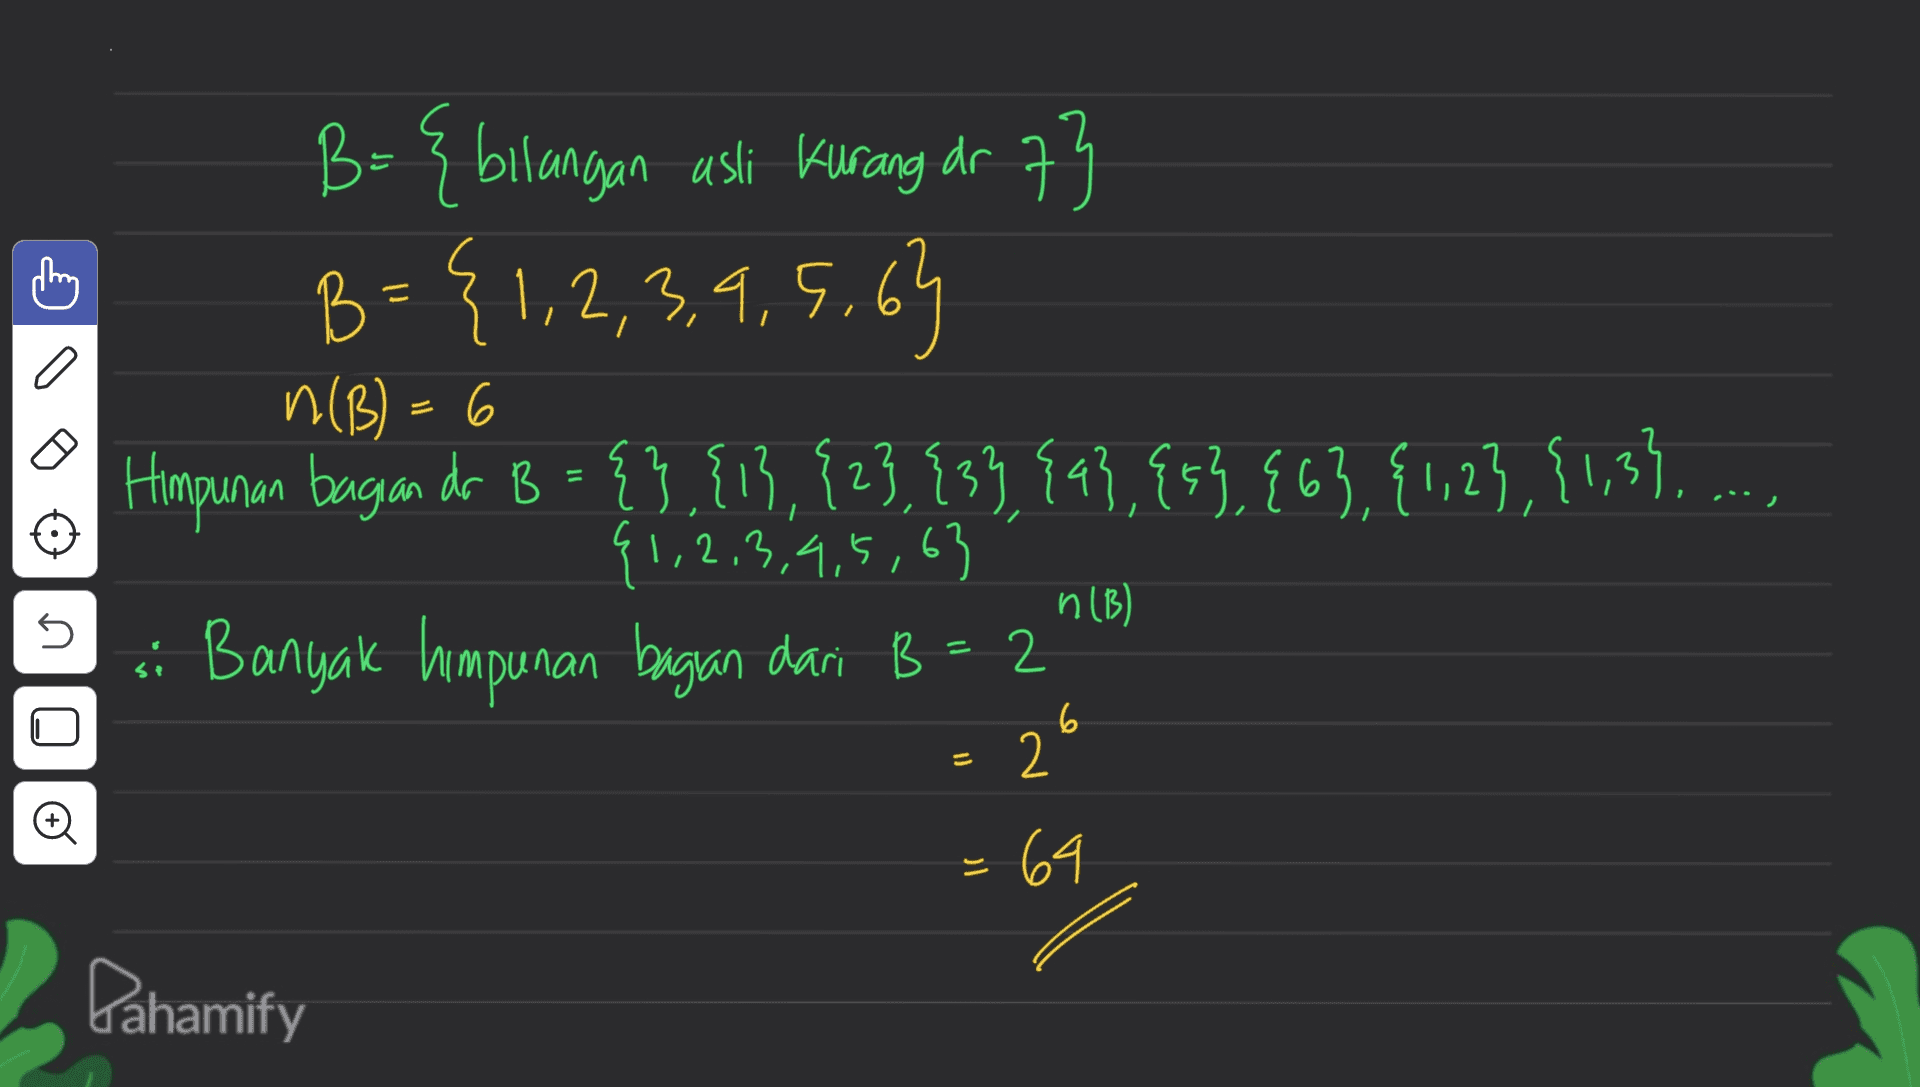 a B= { bilangan usli Kurang dr 73 B = {1,2,3,4,5,6 63 n(B) = 6 Himpunan bagian do B = { },{13,823,93}, {4},{53, E63,{1,2},{1,3). ..., {1,2,3,4,5,63 si Banyak himpunan bagan dari B = 2 2' n (B) s 6 = Oo 64 Pahamify 